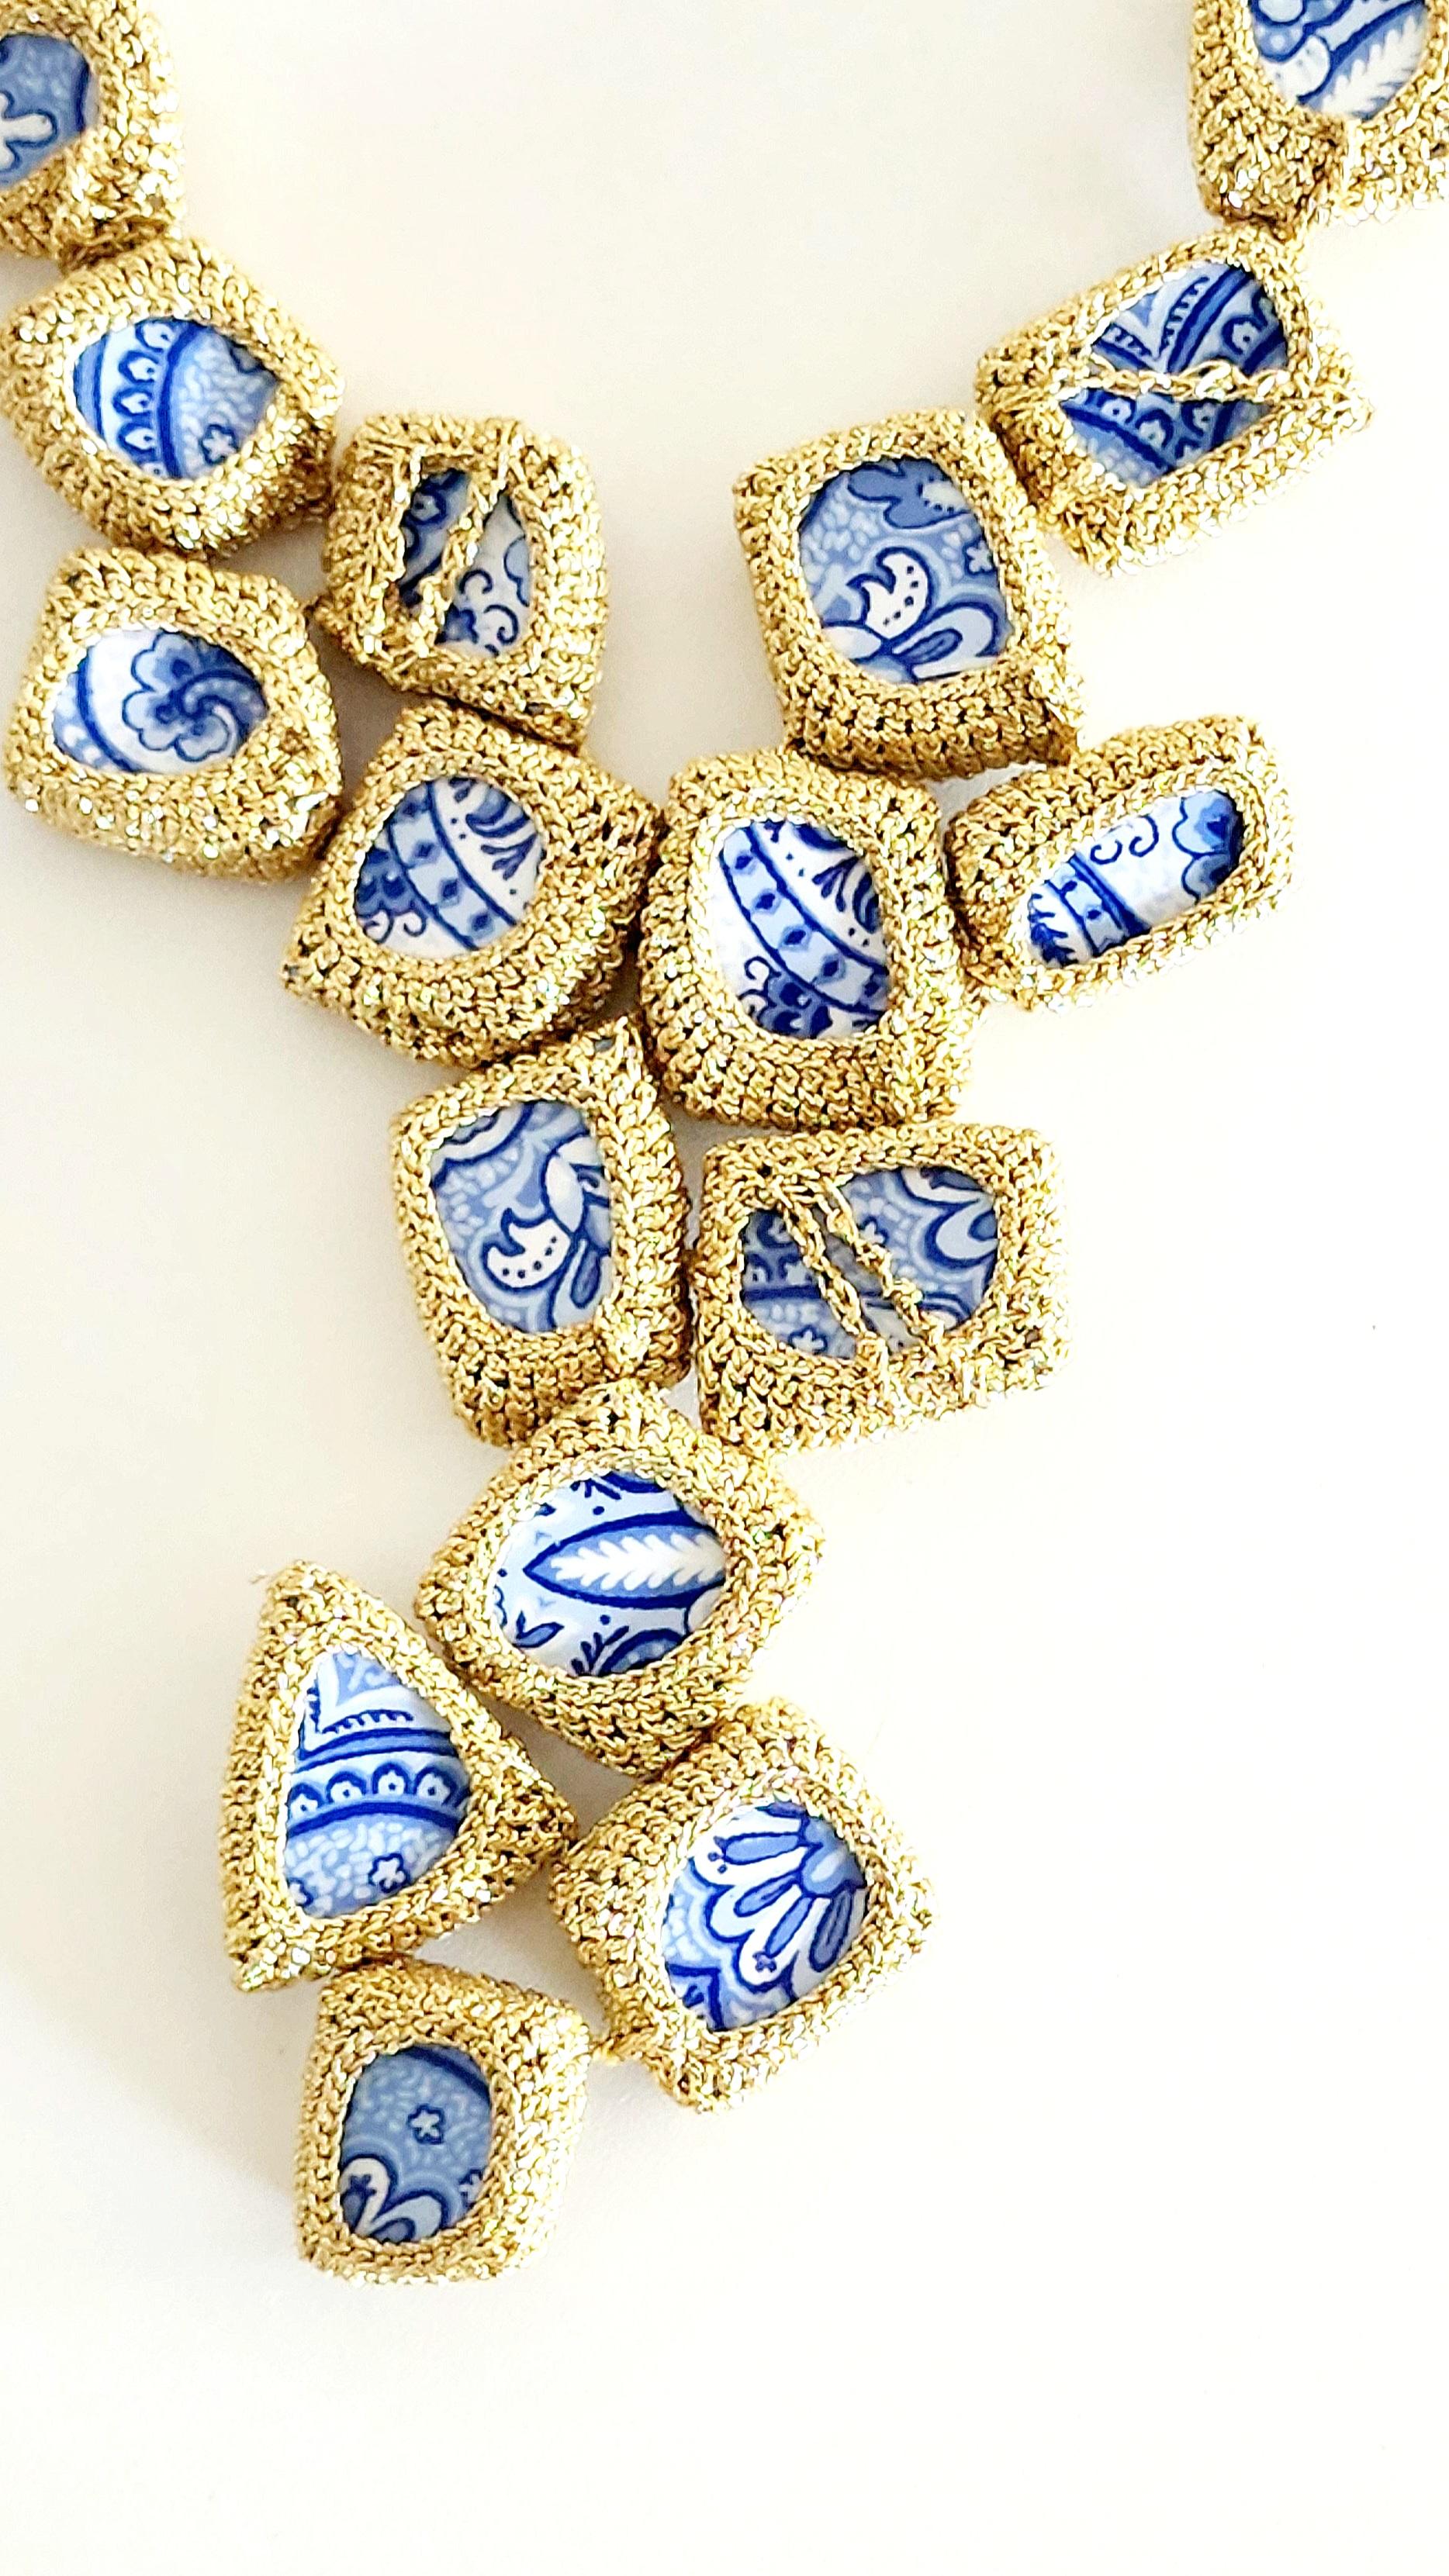 Einzigartige blau-weiße, gehäkelte Keramik-Halskette. Diese Halskette ist Teil meiner Kintsugi-Sammlung. Ich musste die scharfen Kanten jeder Fliese glätten und dann häkelte ich sie mit einem goldenen, glatten Faden. Kintsugi kommt aus dem